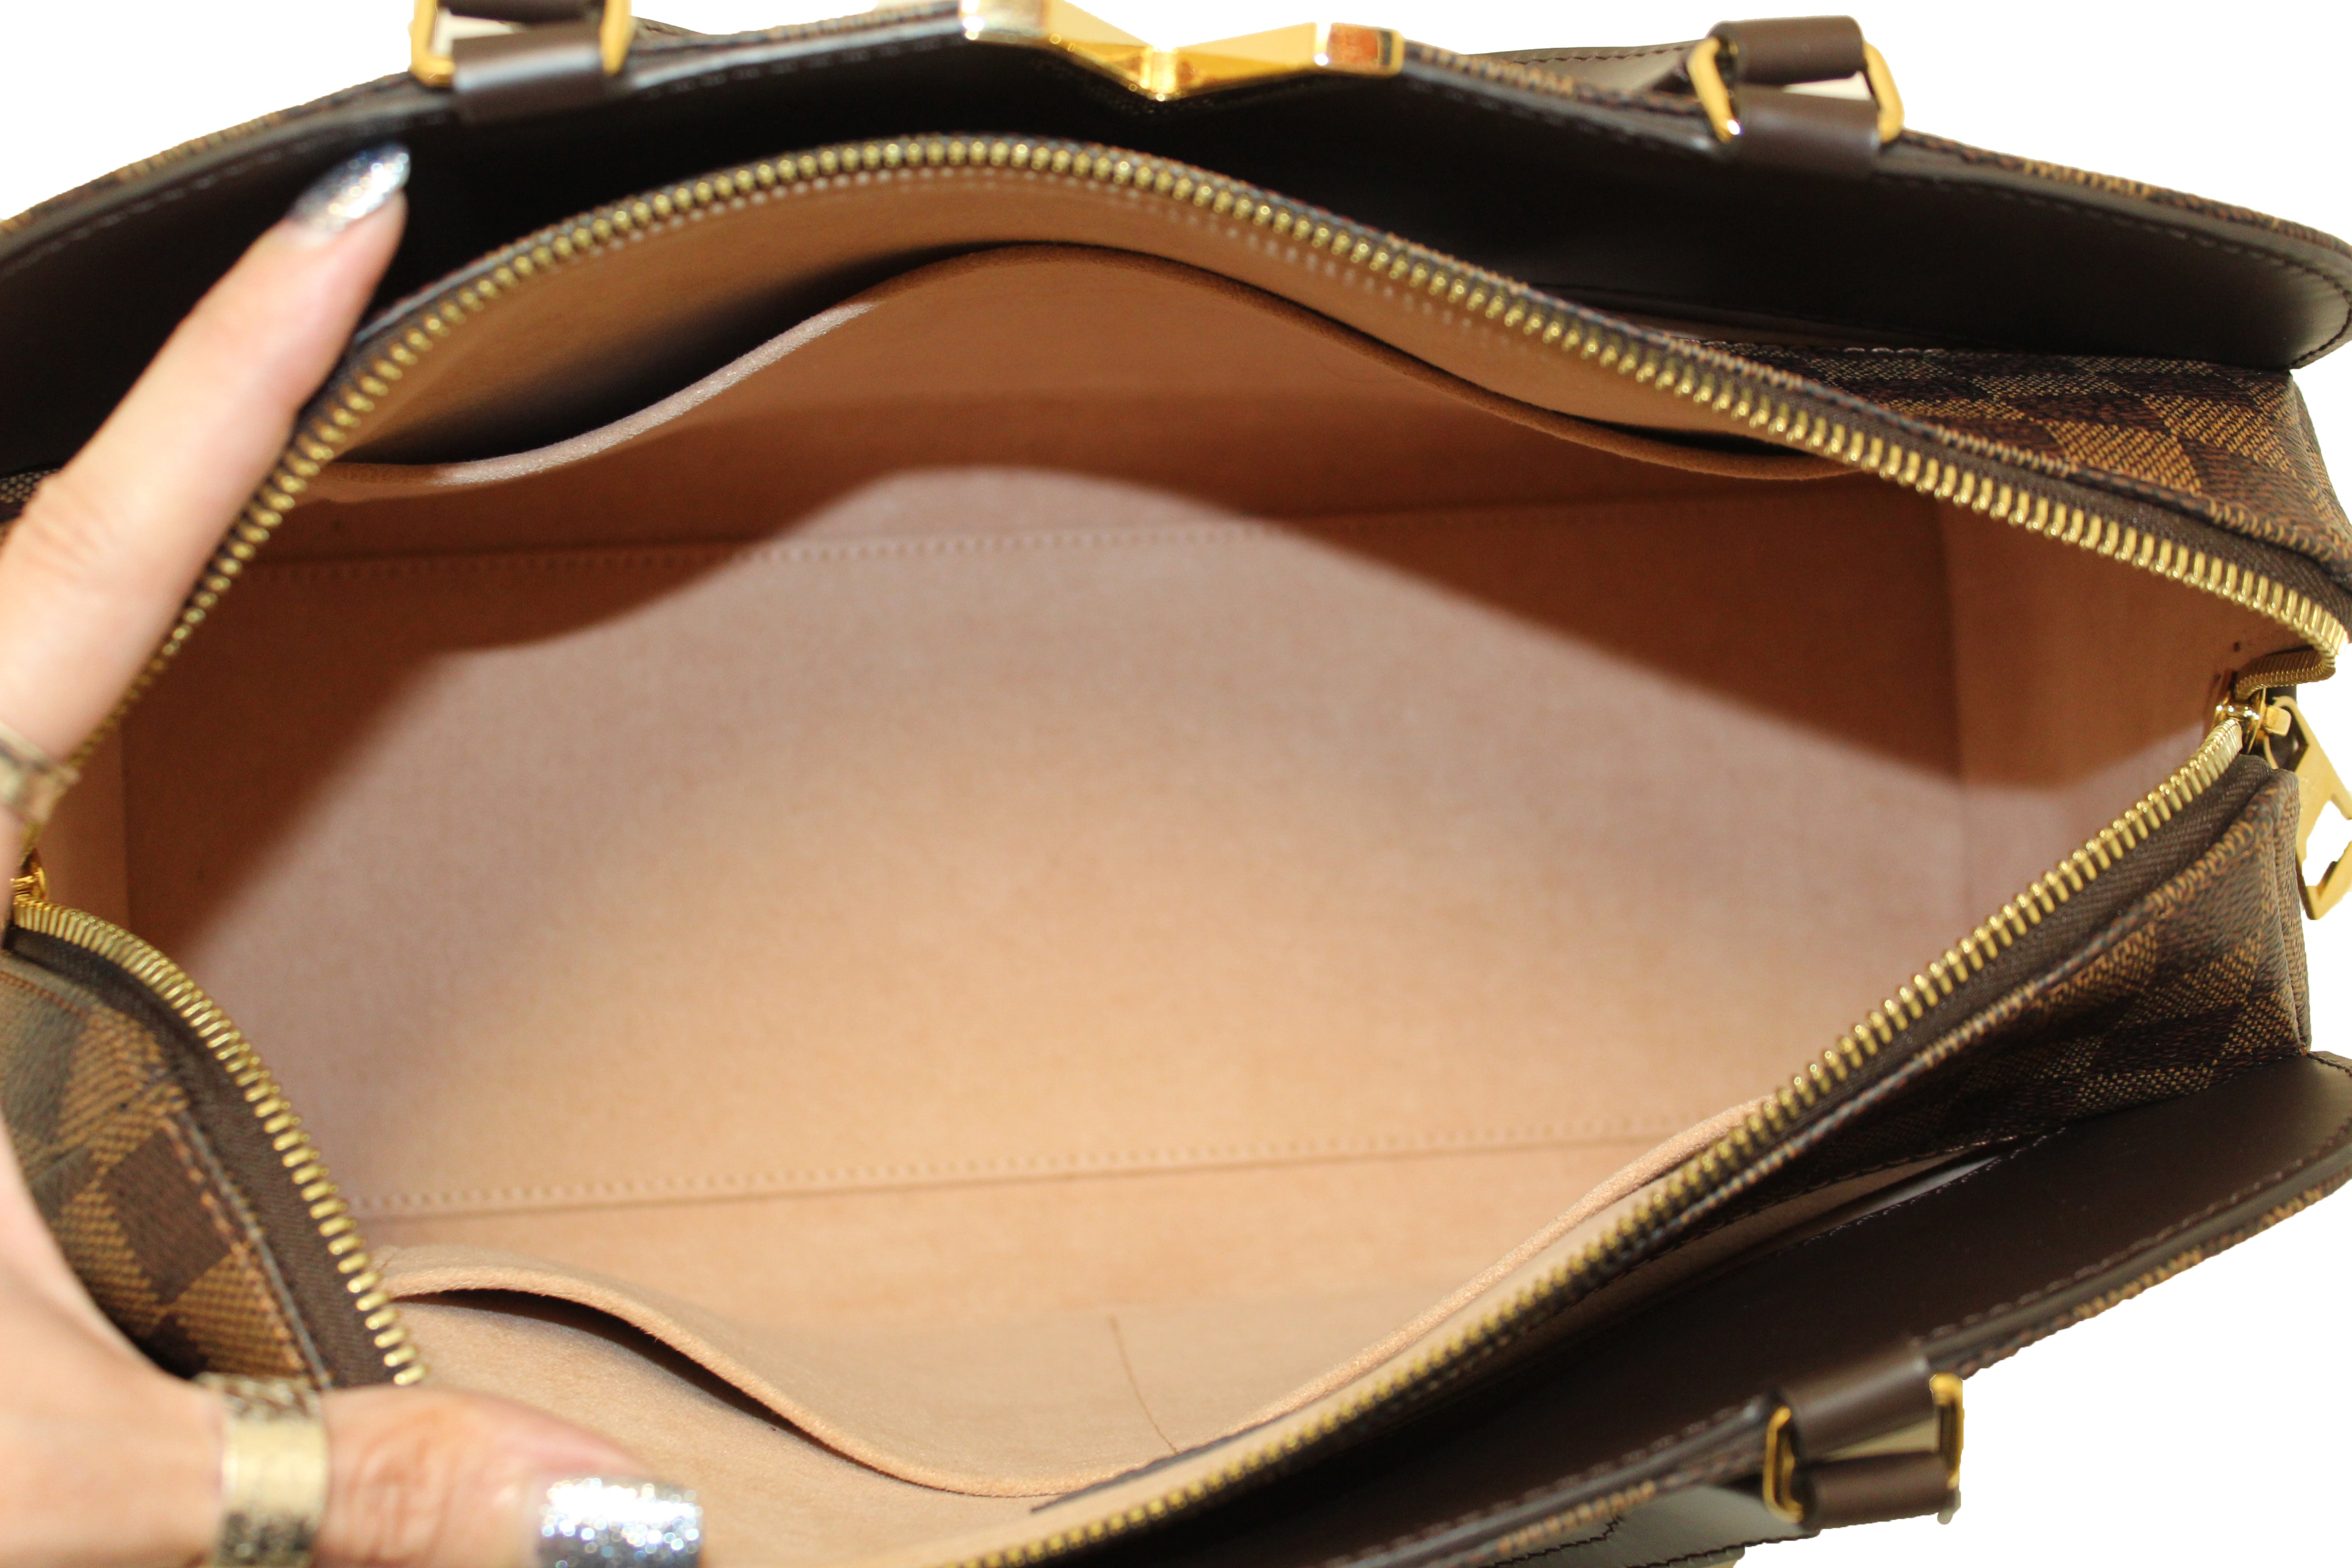 Authentic Louis Vuitton Damier Ebene Canvas Kensignton Bowling Handbag